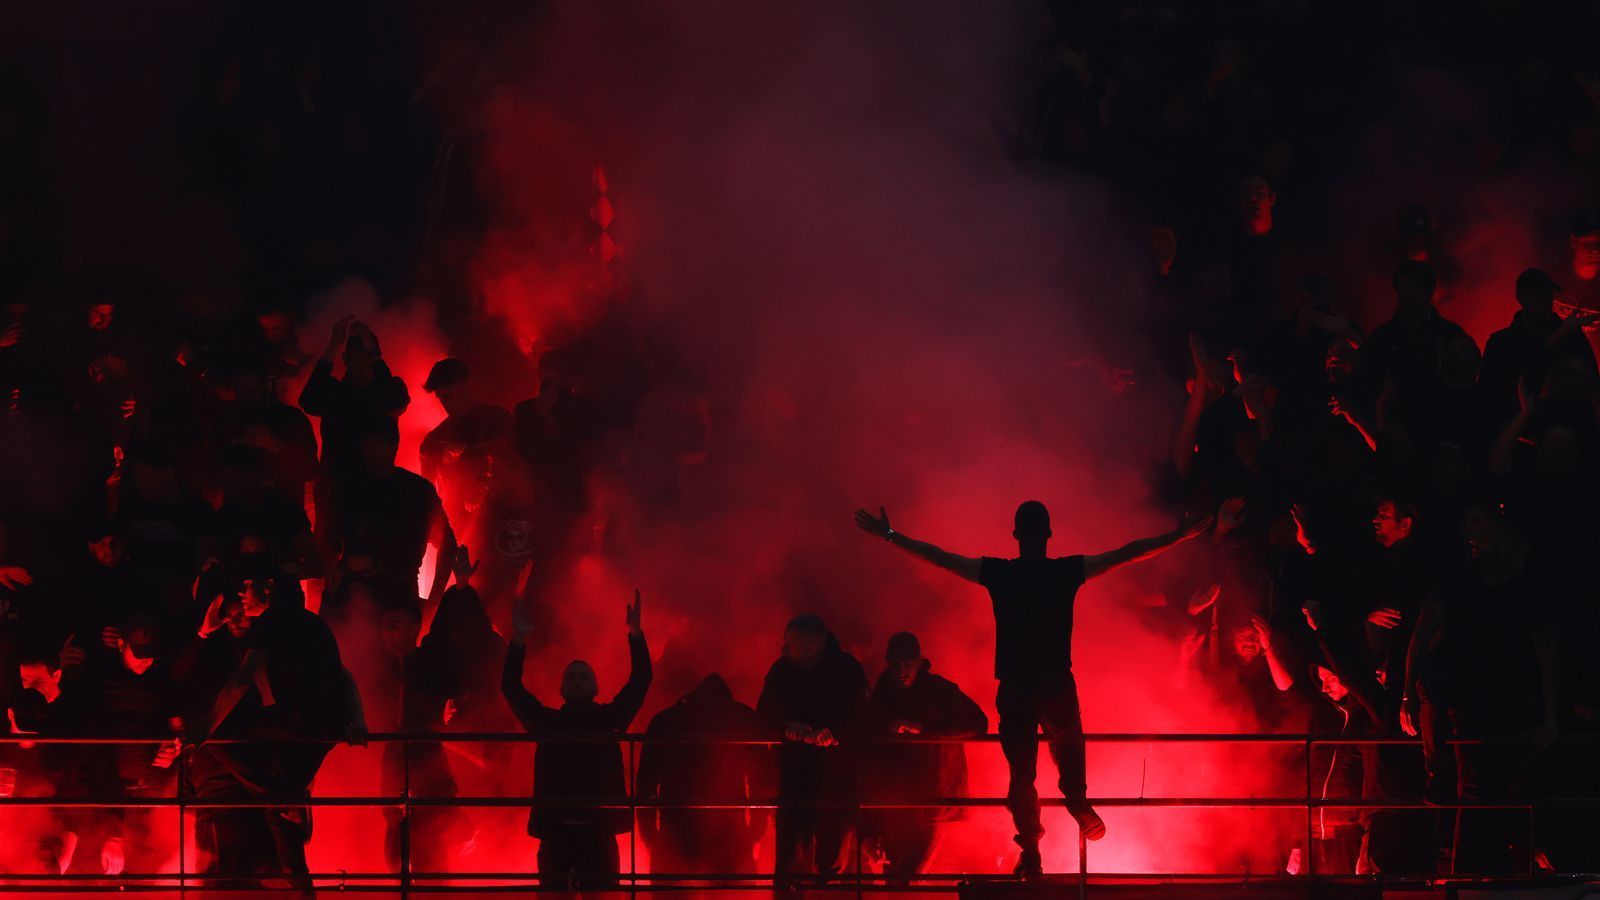 
                <strong>Stadtderby in der Champions League: AC Mailand vs. Inter Mailand</strong><br>
                Während ihre Mannschaft auf dem Spielfeld kein Feuerwerk abbrennt, zündeln die Fans der AC Mailand im Block.
              